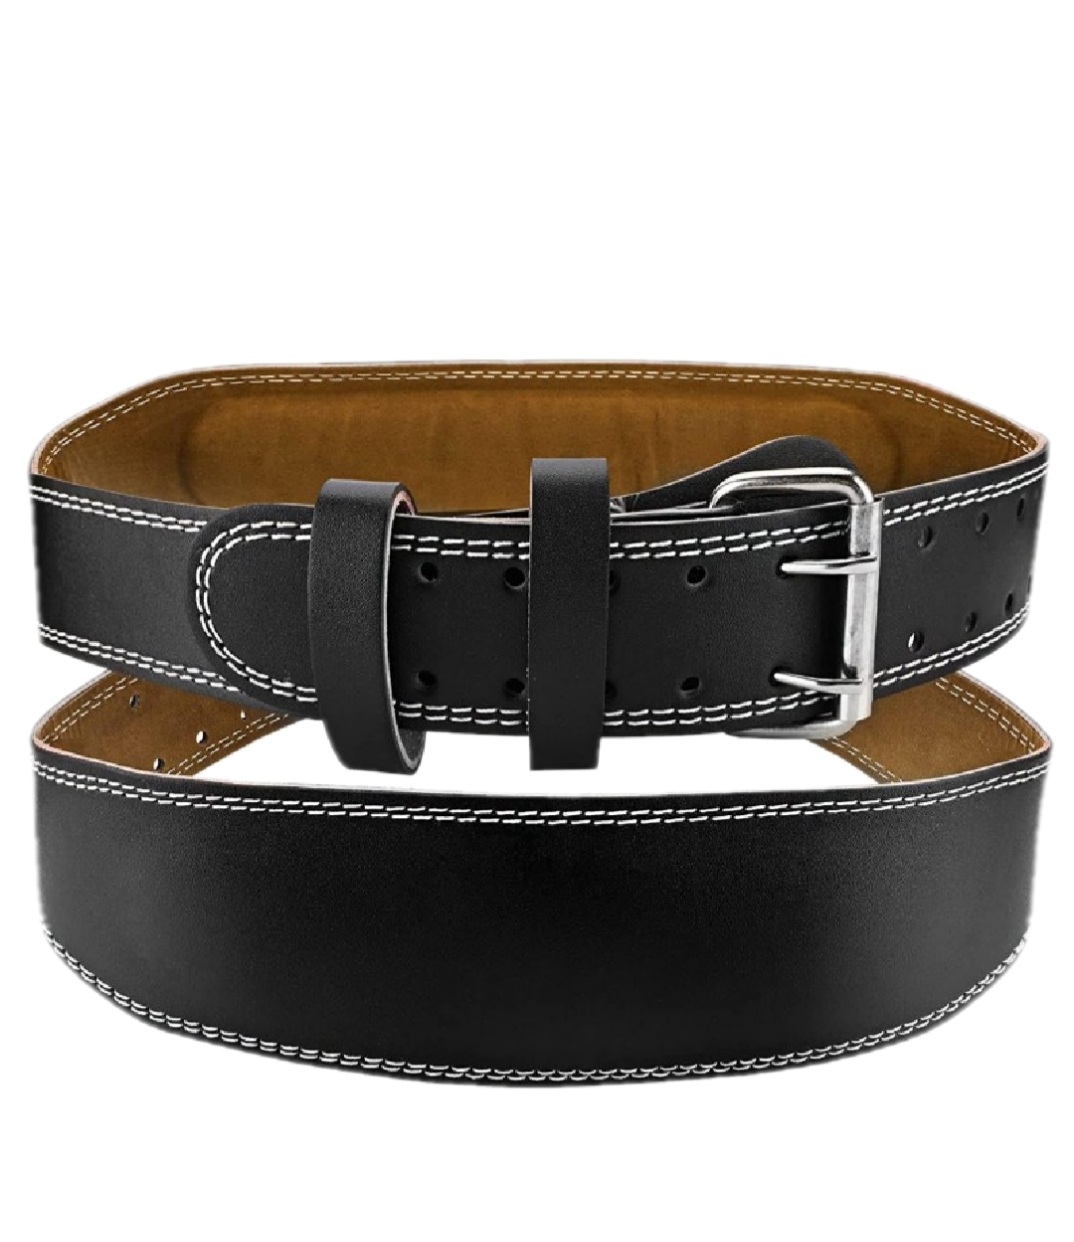 Cinturón Lumbar De Cuero Para Cintura De 75 A 100cm Ded - Negro  MKP